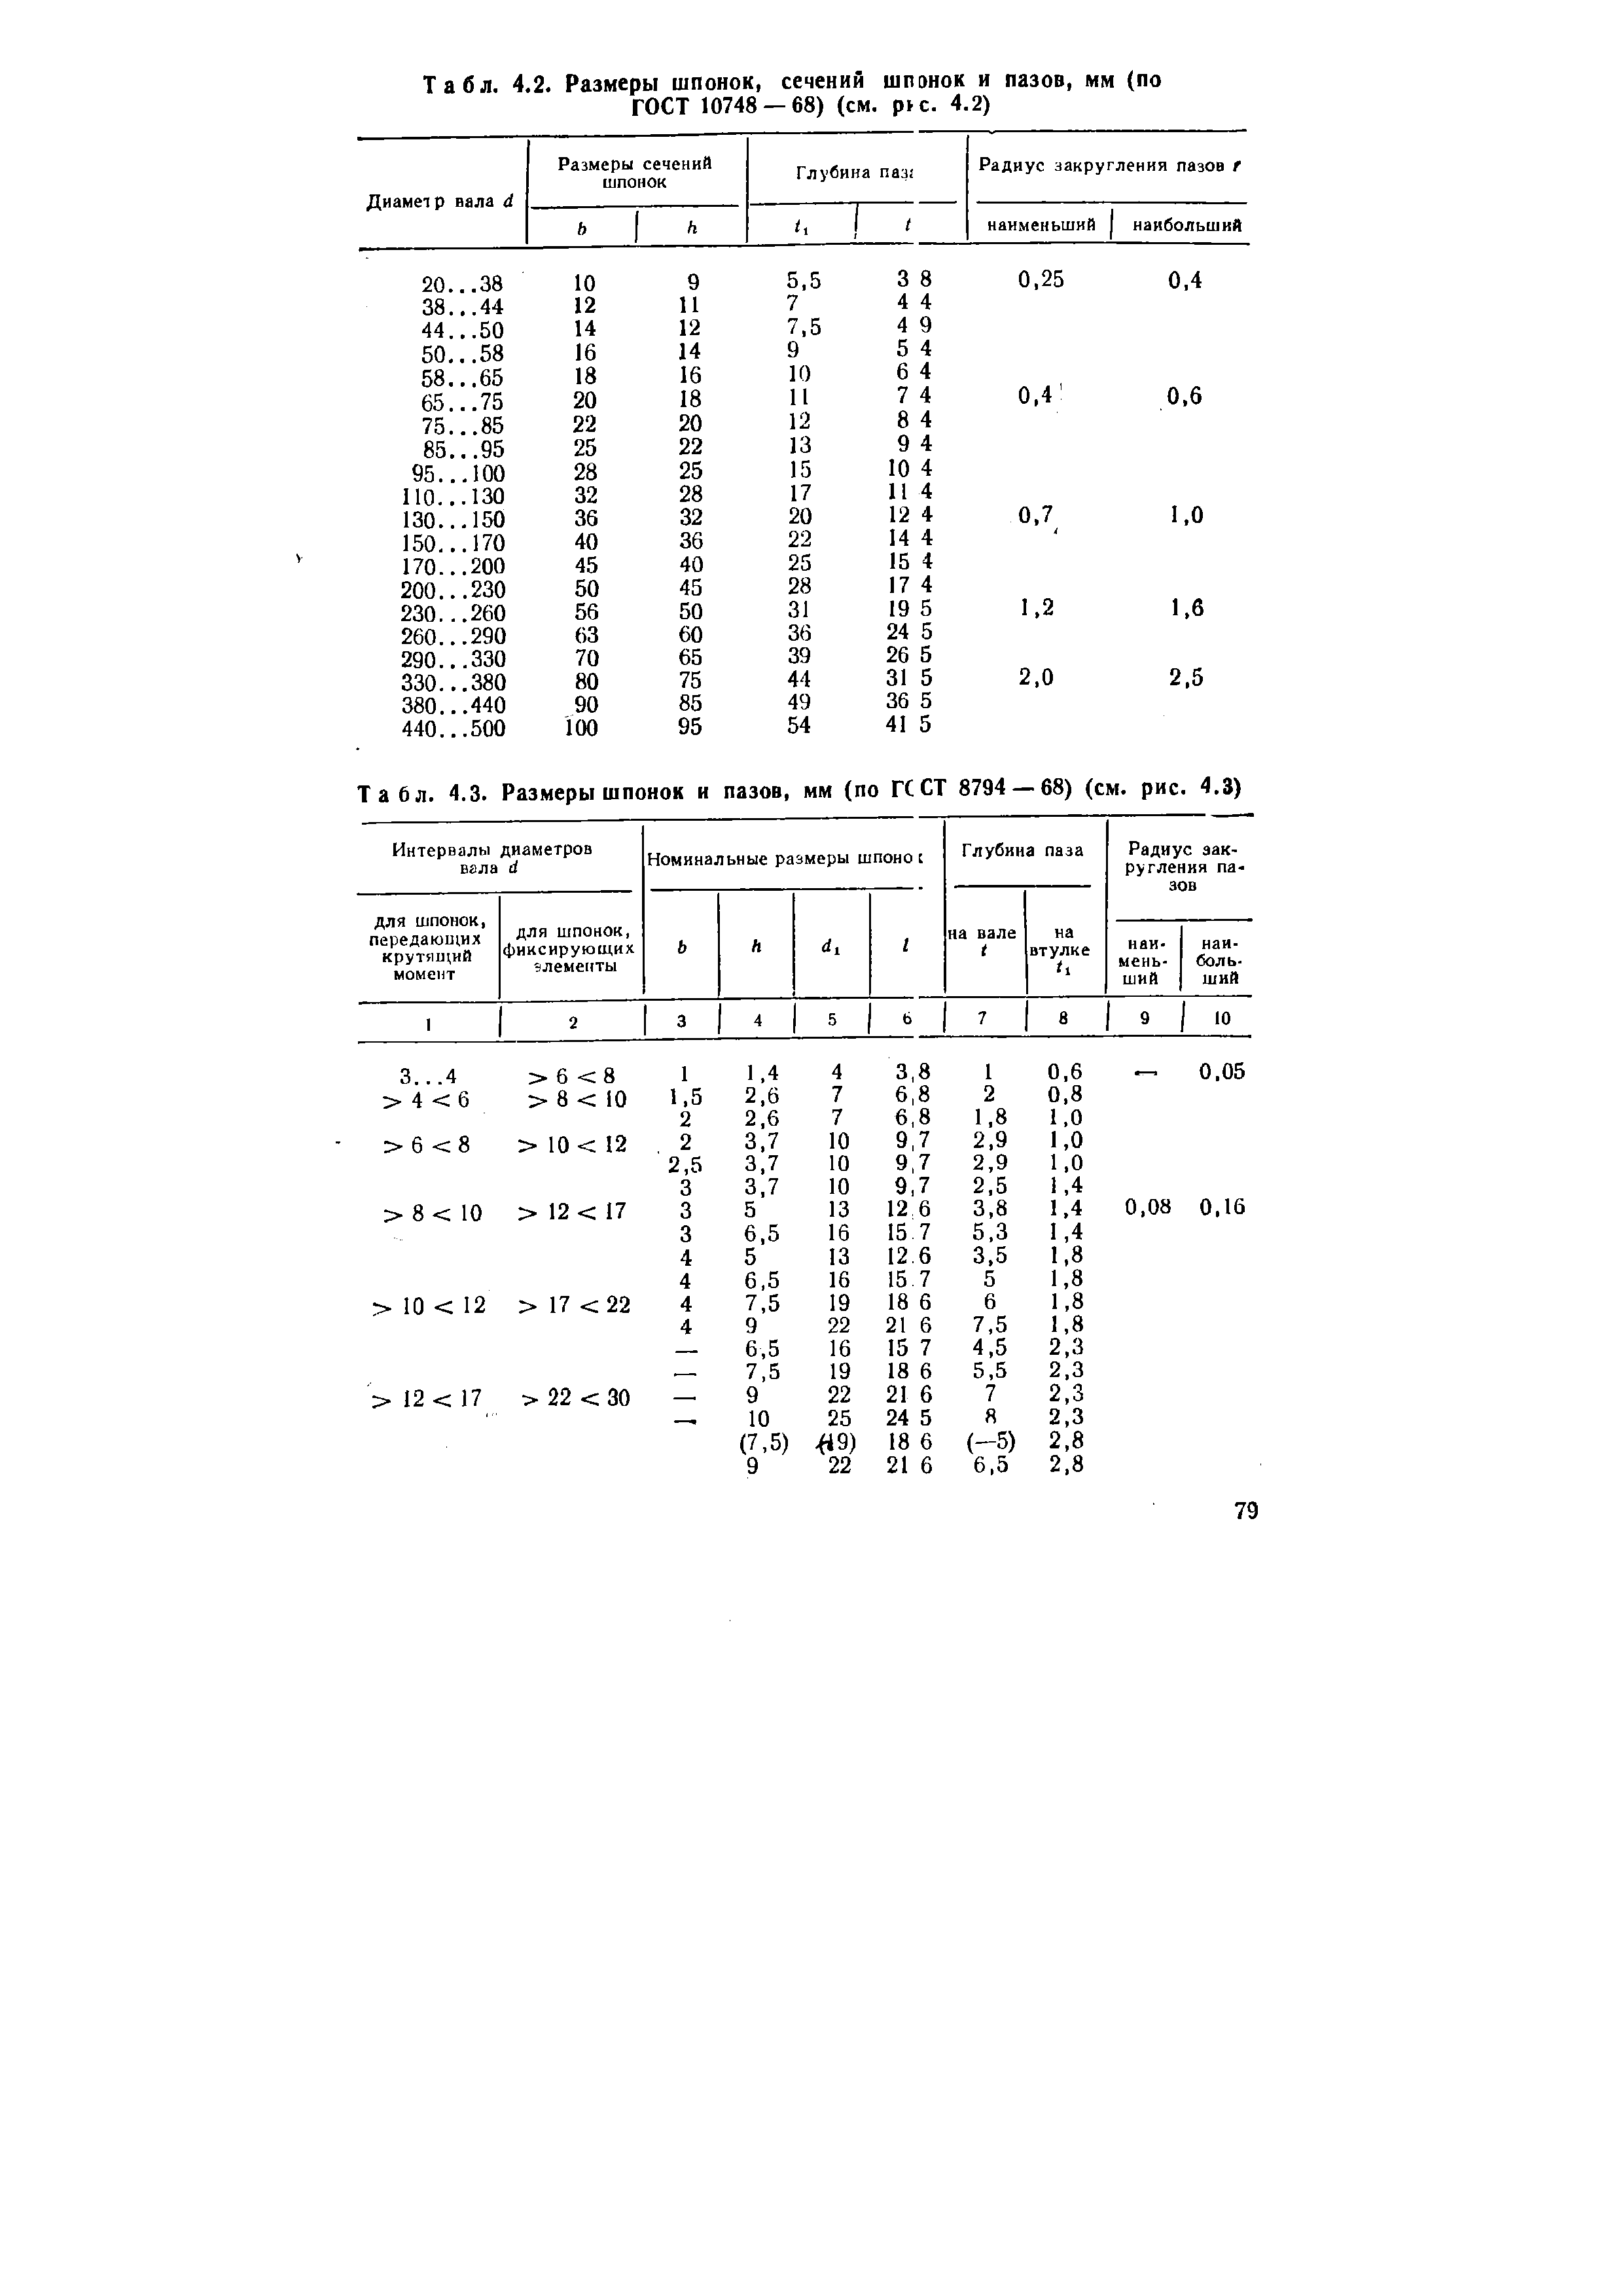 Табл. 4.2. Размеры шпонок, сечений шпэнок и пазов, мм (по ГОСТ 10748 — 68) (см. р>с. 4.2)
